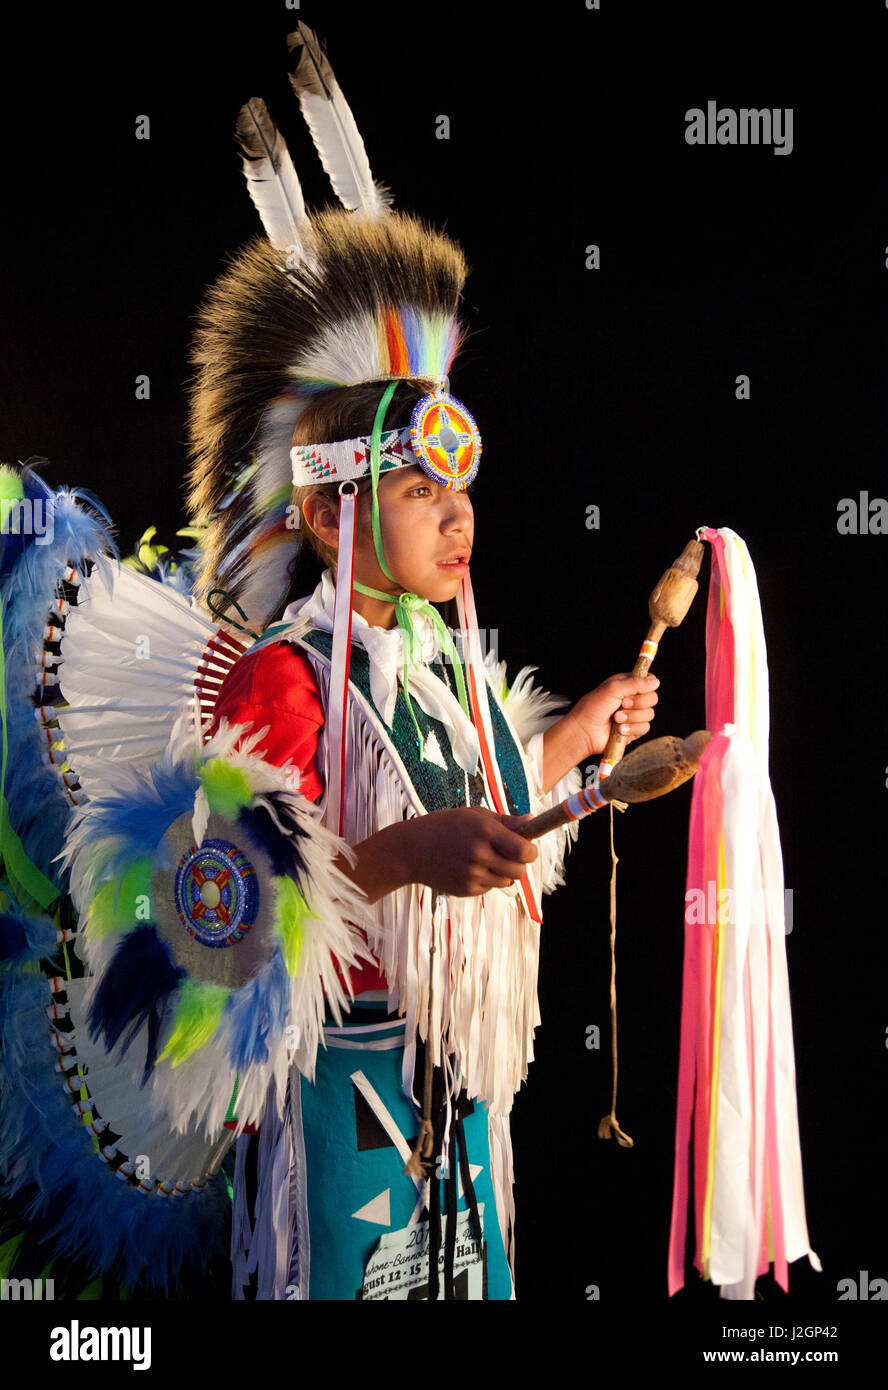 Plaqués agitation dancer Pacer Allan Tobey (Assiniboine, Sioux) habillés en costumes de pow-wow à plumes colorées grouille, tablier et coiffe roach tient deux bâtons de danse avec des rubans. Banque D'Images